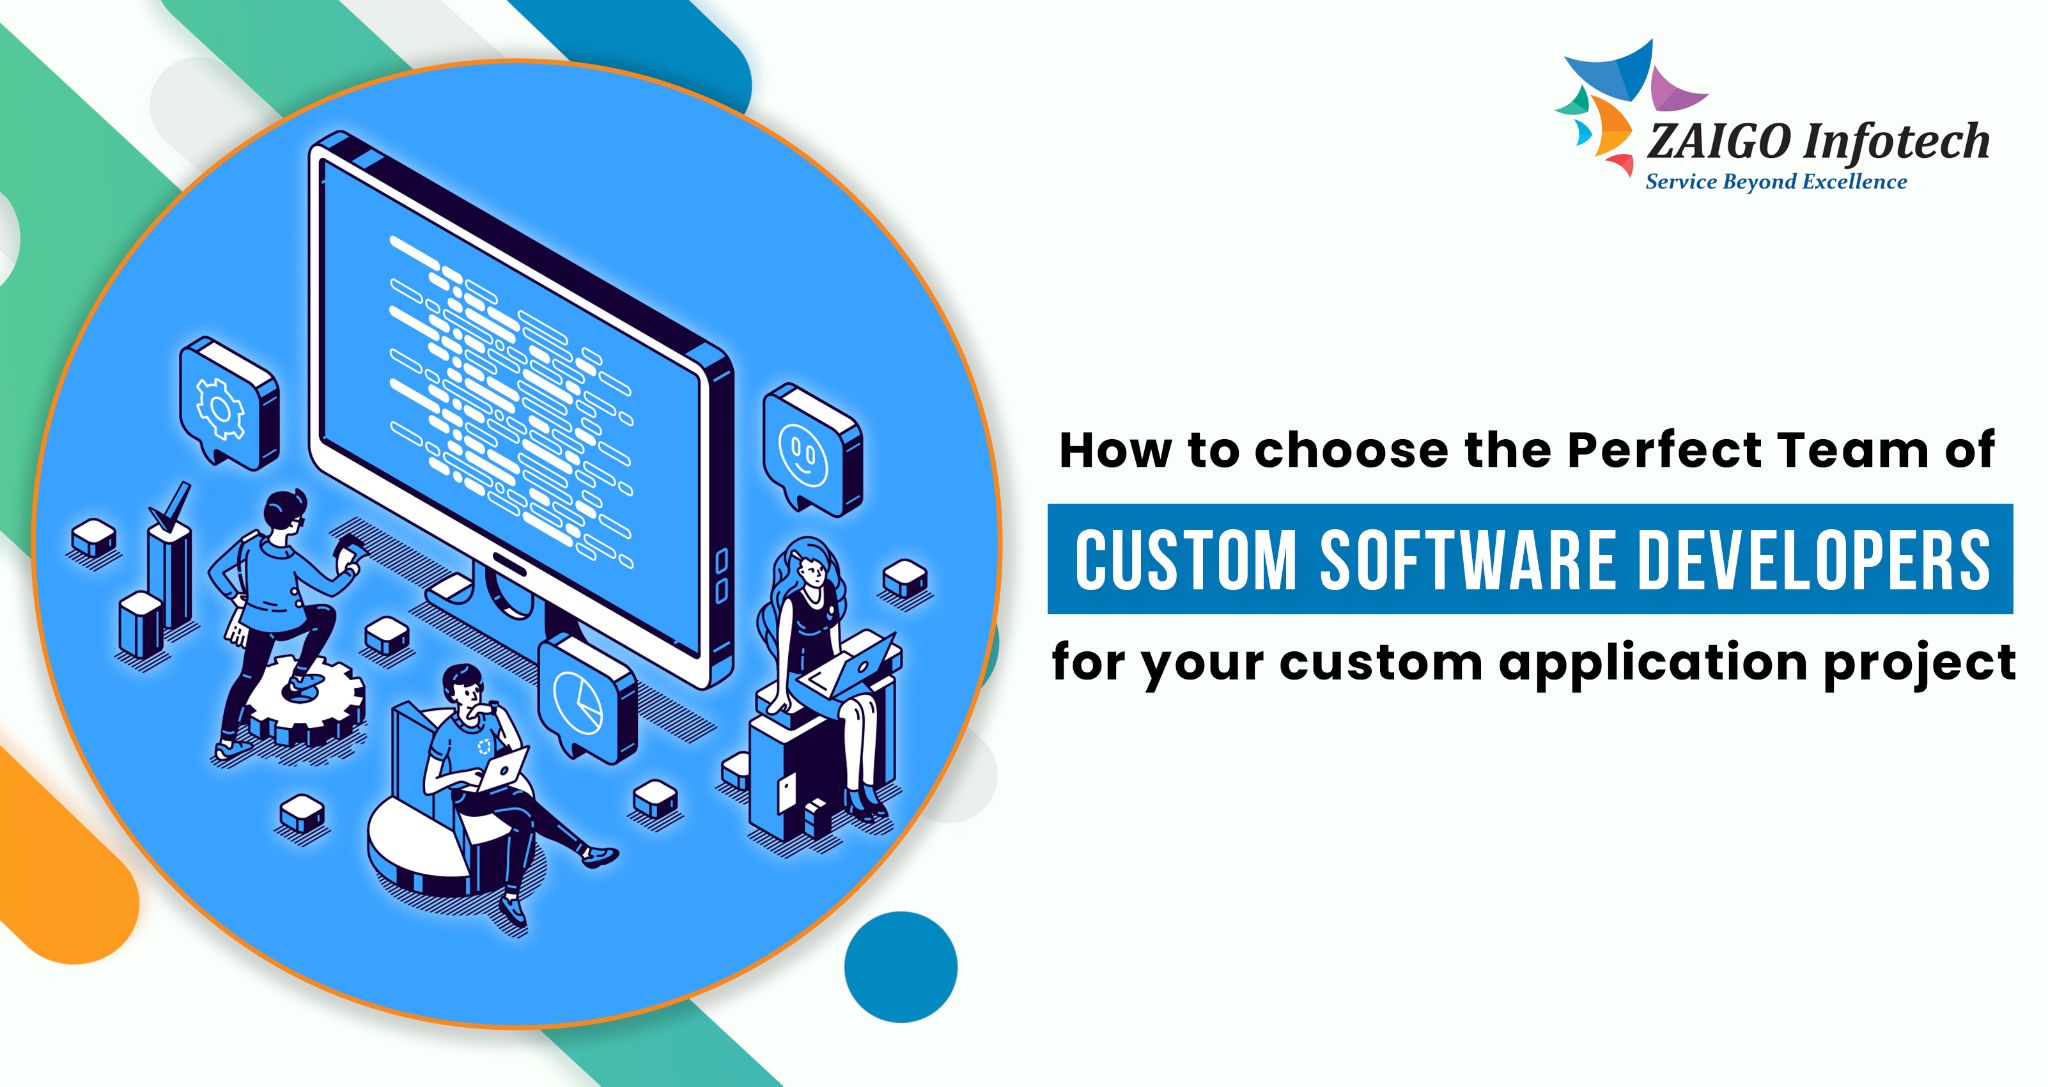 How To Choose Best Custom Software Developers - ZaigoInfotech